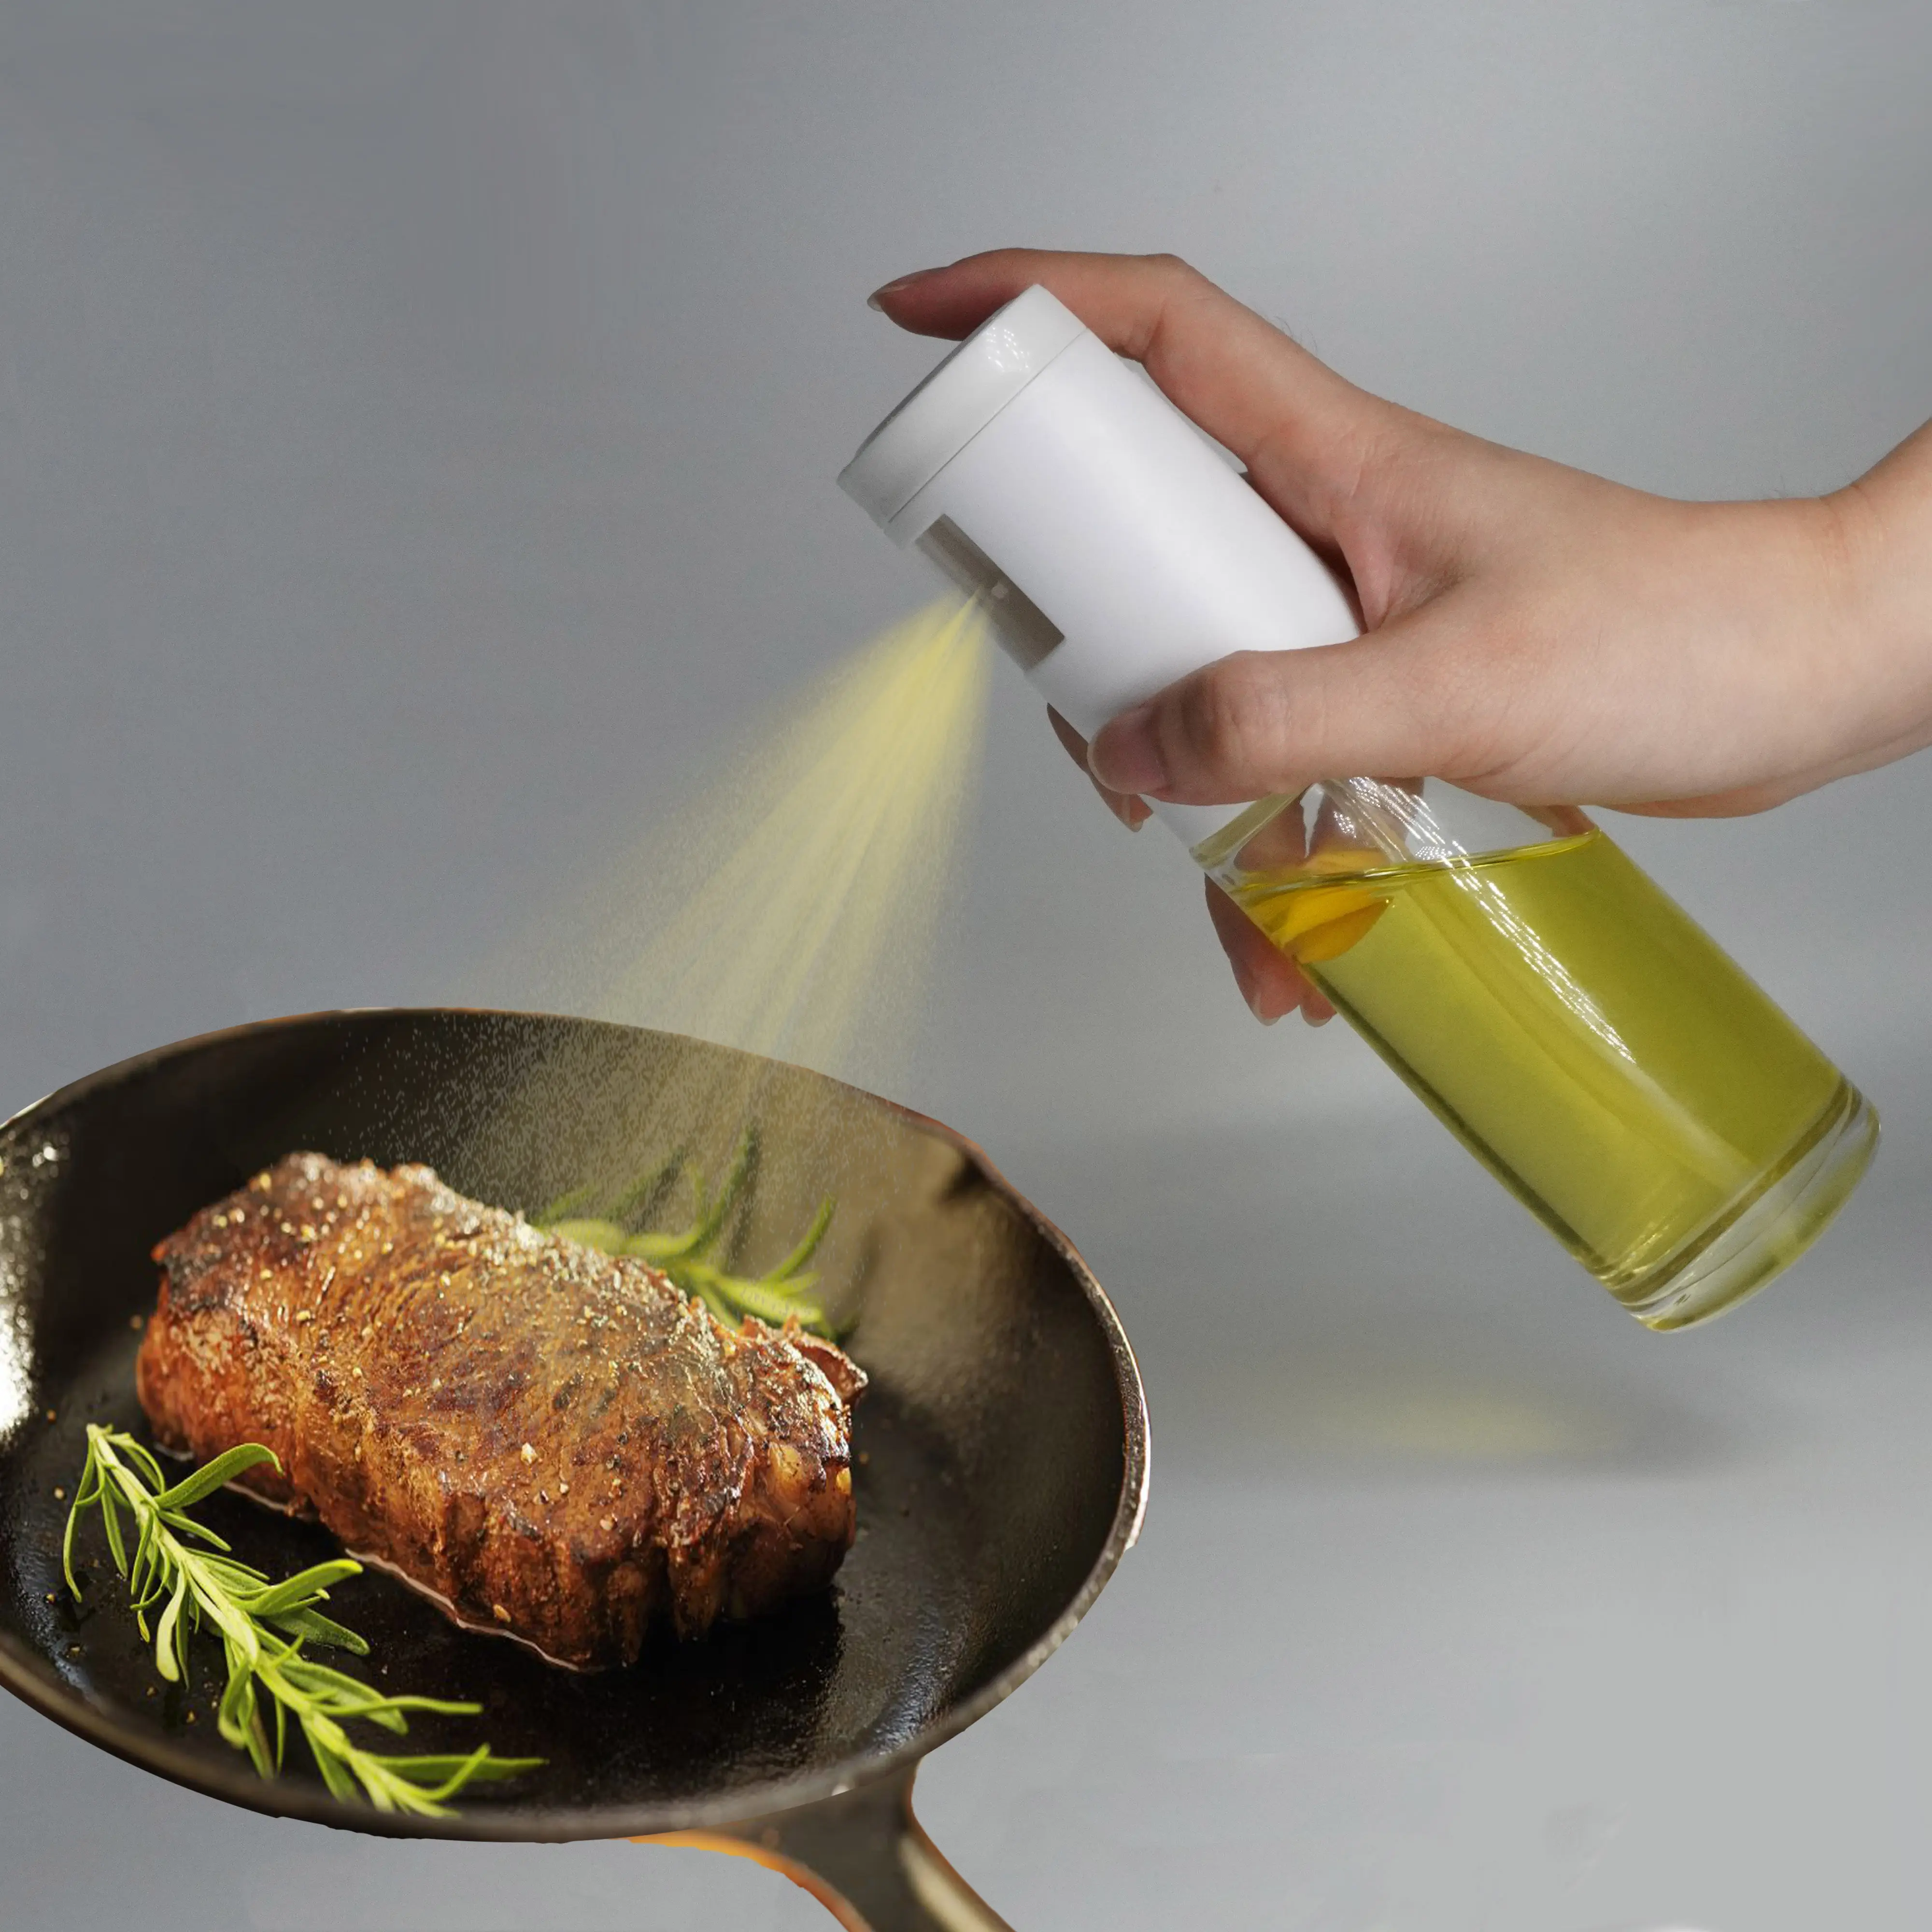 China Supplier Wholesale Spray Oil Cooking Use Oil Sprayer Oil Dispenser Bottle Olive Spray Bottle